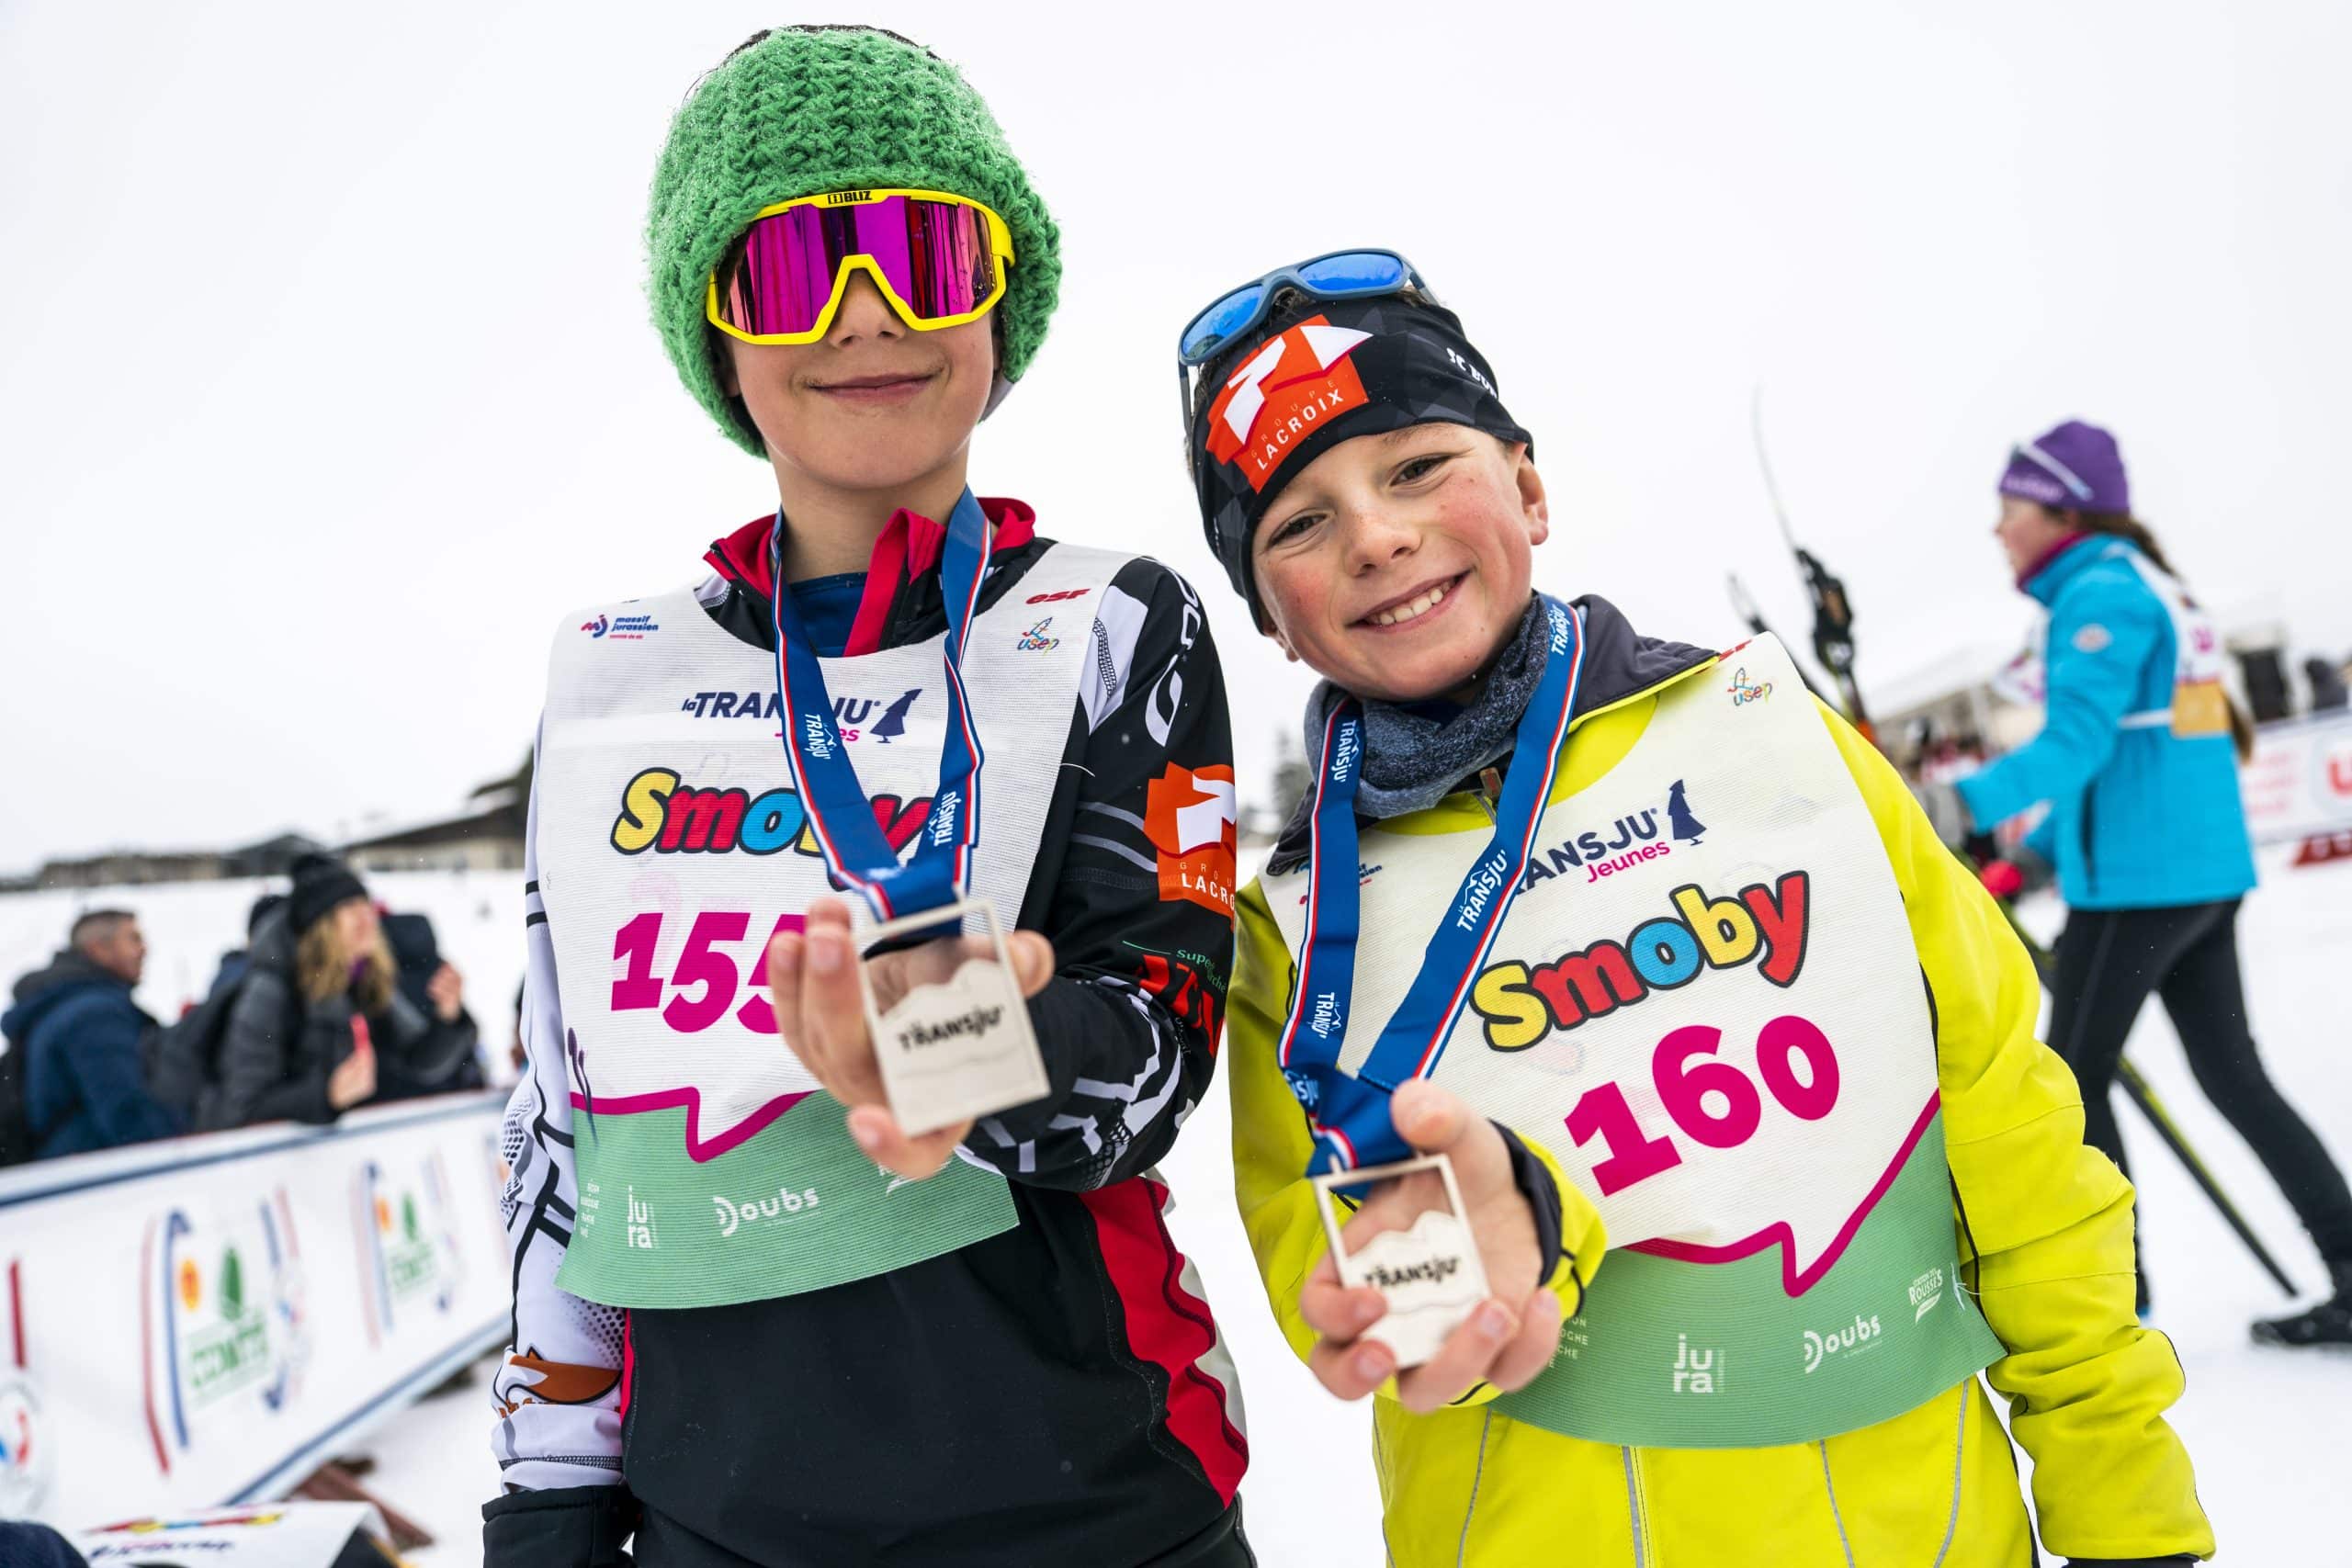 La Transju Jeunes 2023 course des ski de fond pour enfants